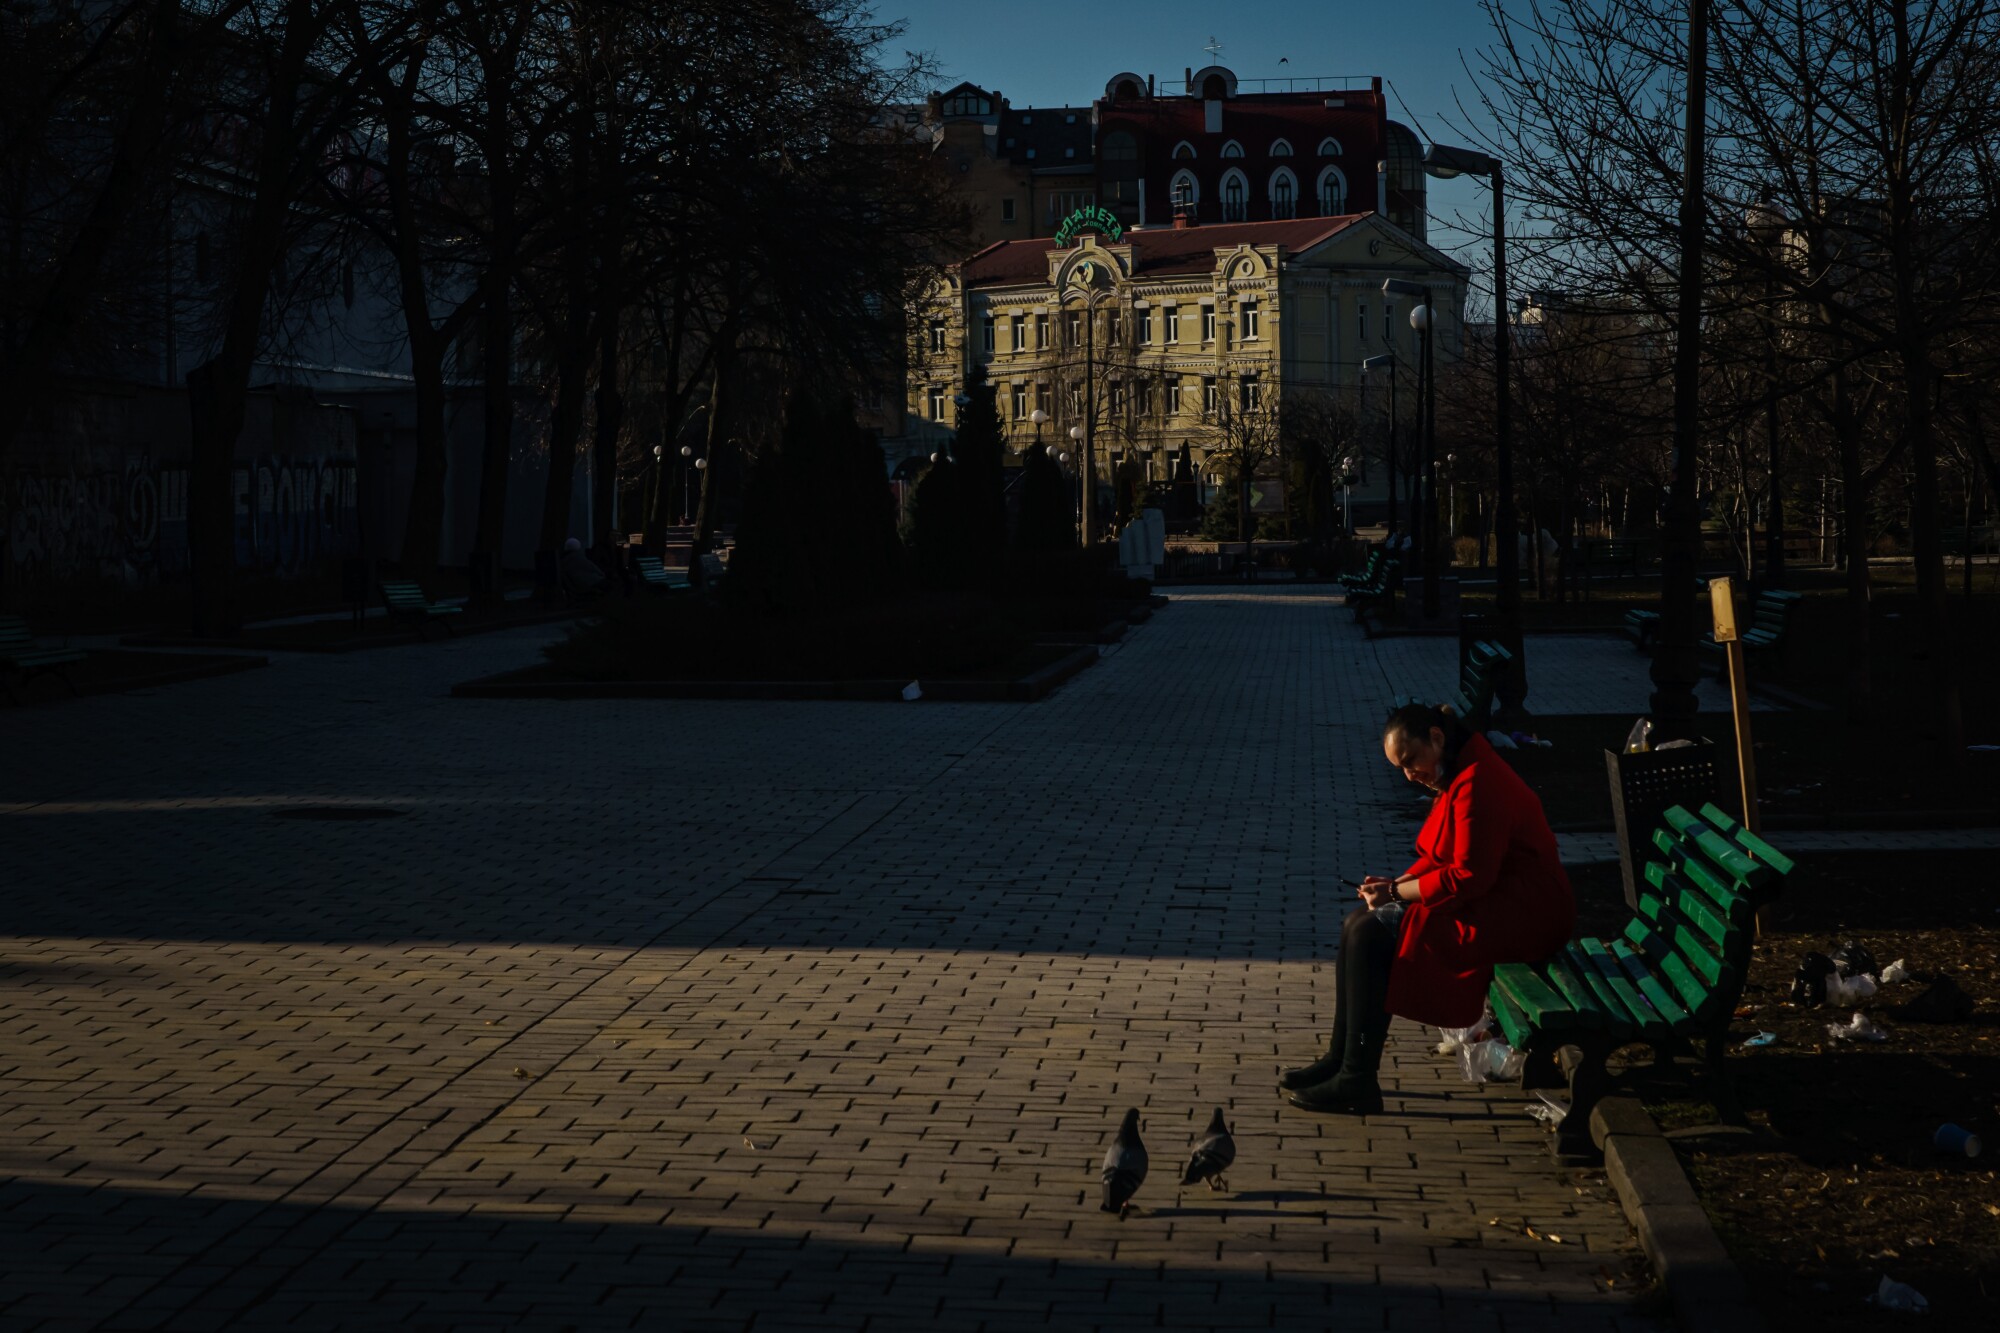 A woman on a park bench near birds